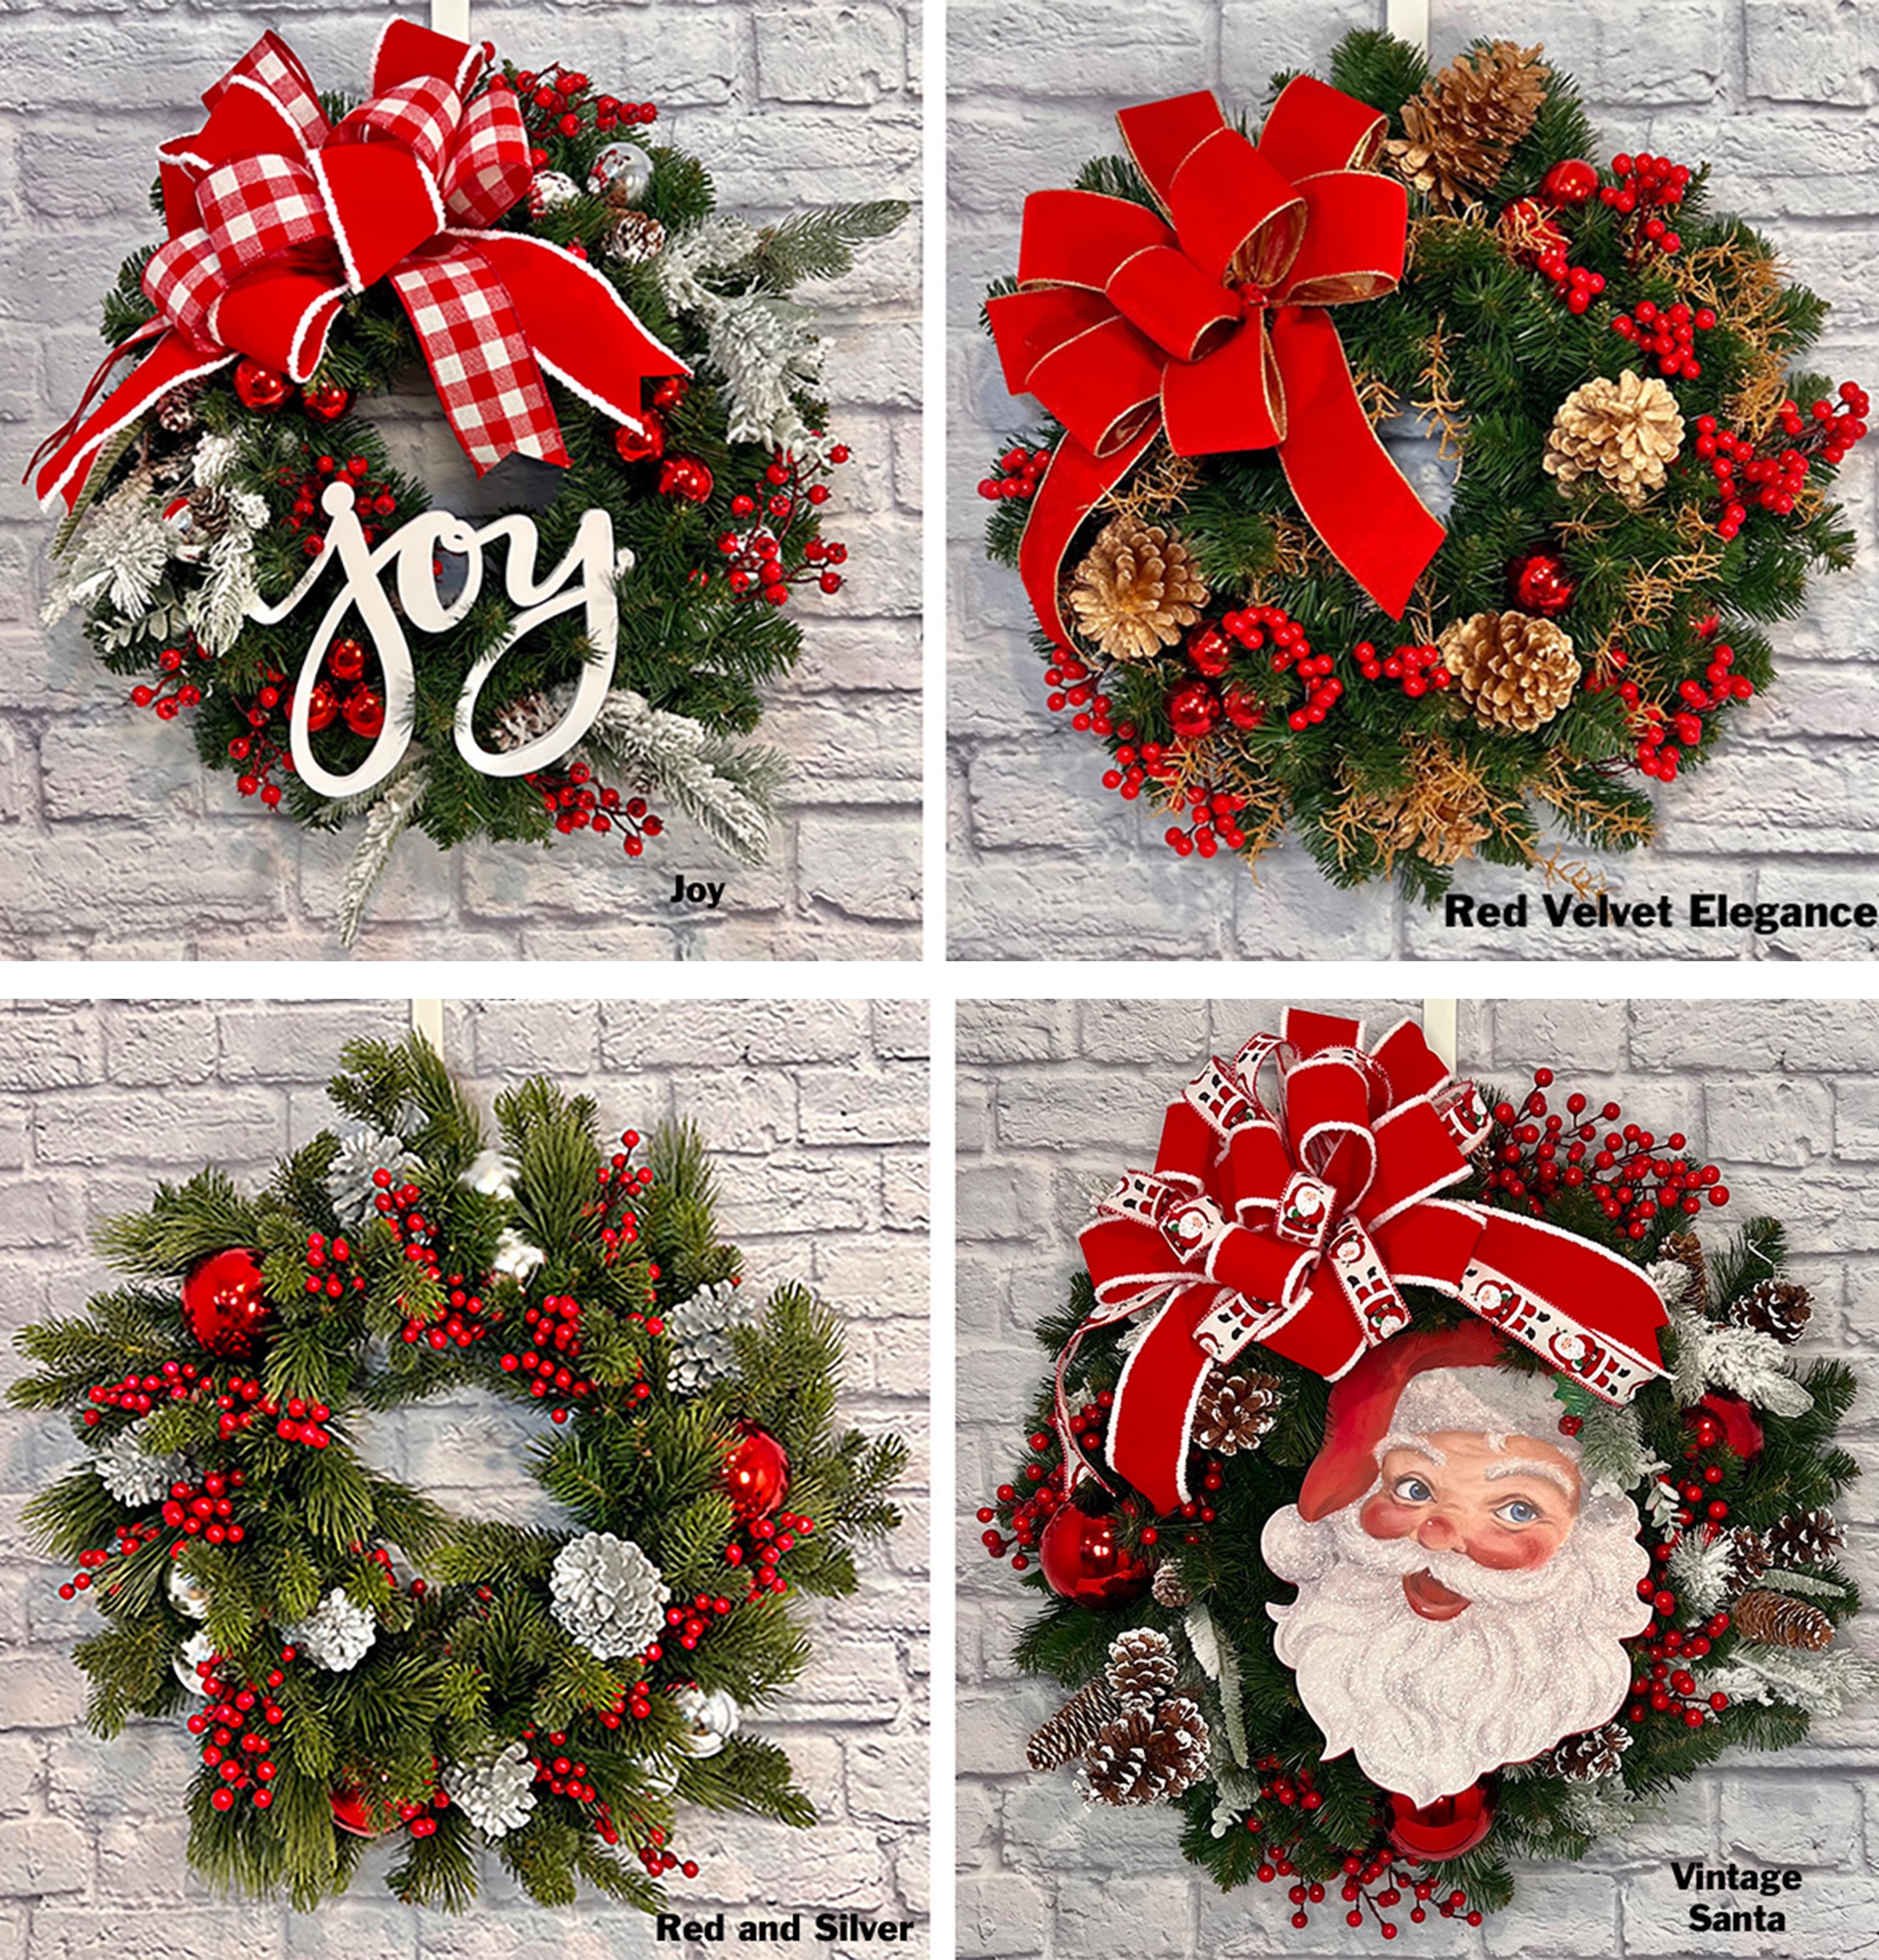 St Nicks Wreath Designer Collection